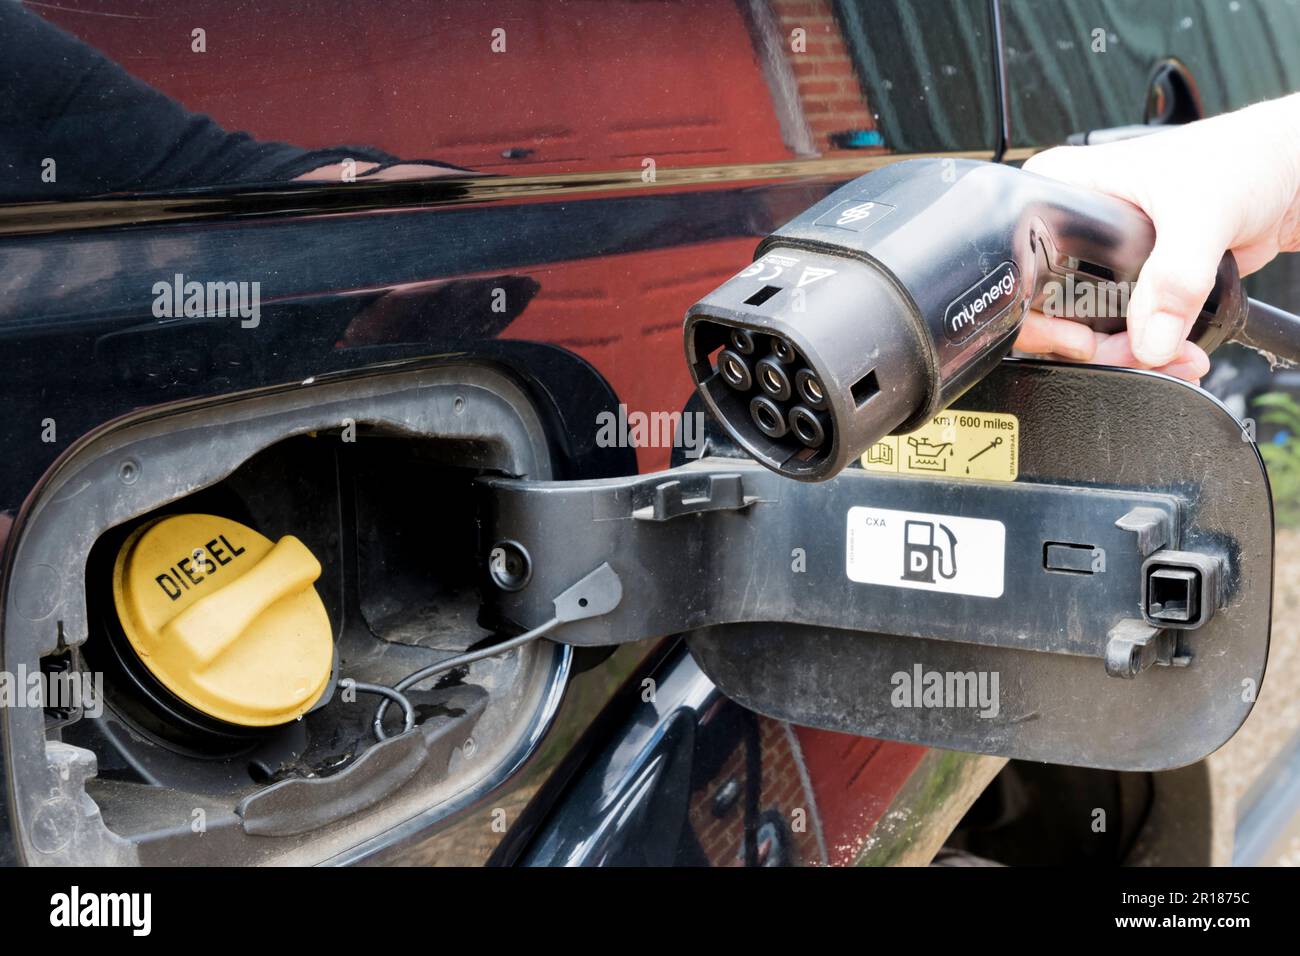 Connecteur pour chargeur de véhicule électrique à côté du bouchon de remplissage du réservoir diesel d'une voiture utilisant du combustible fossile. Banque D'Images